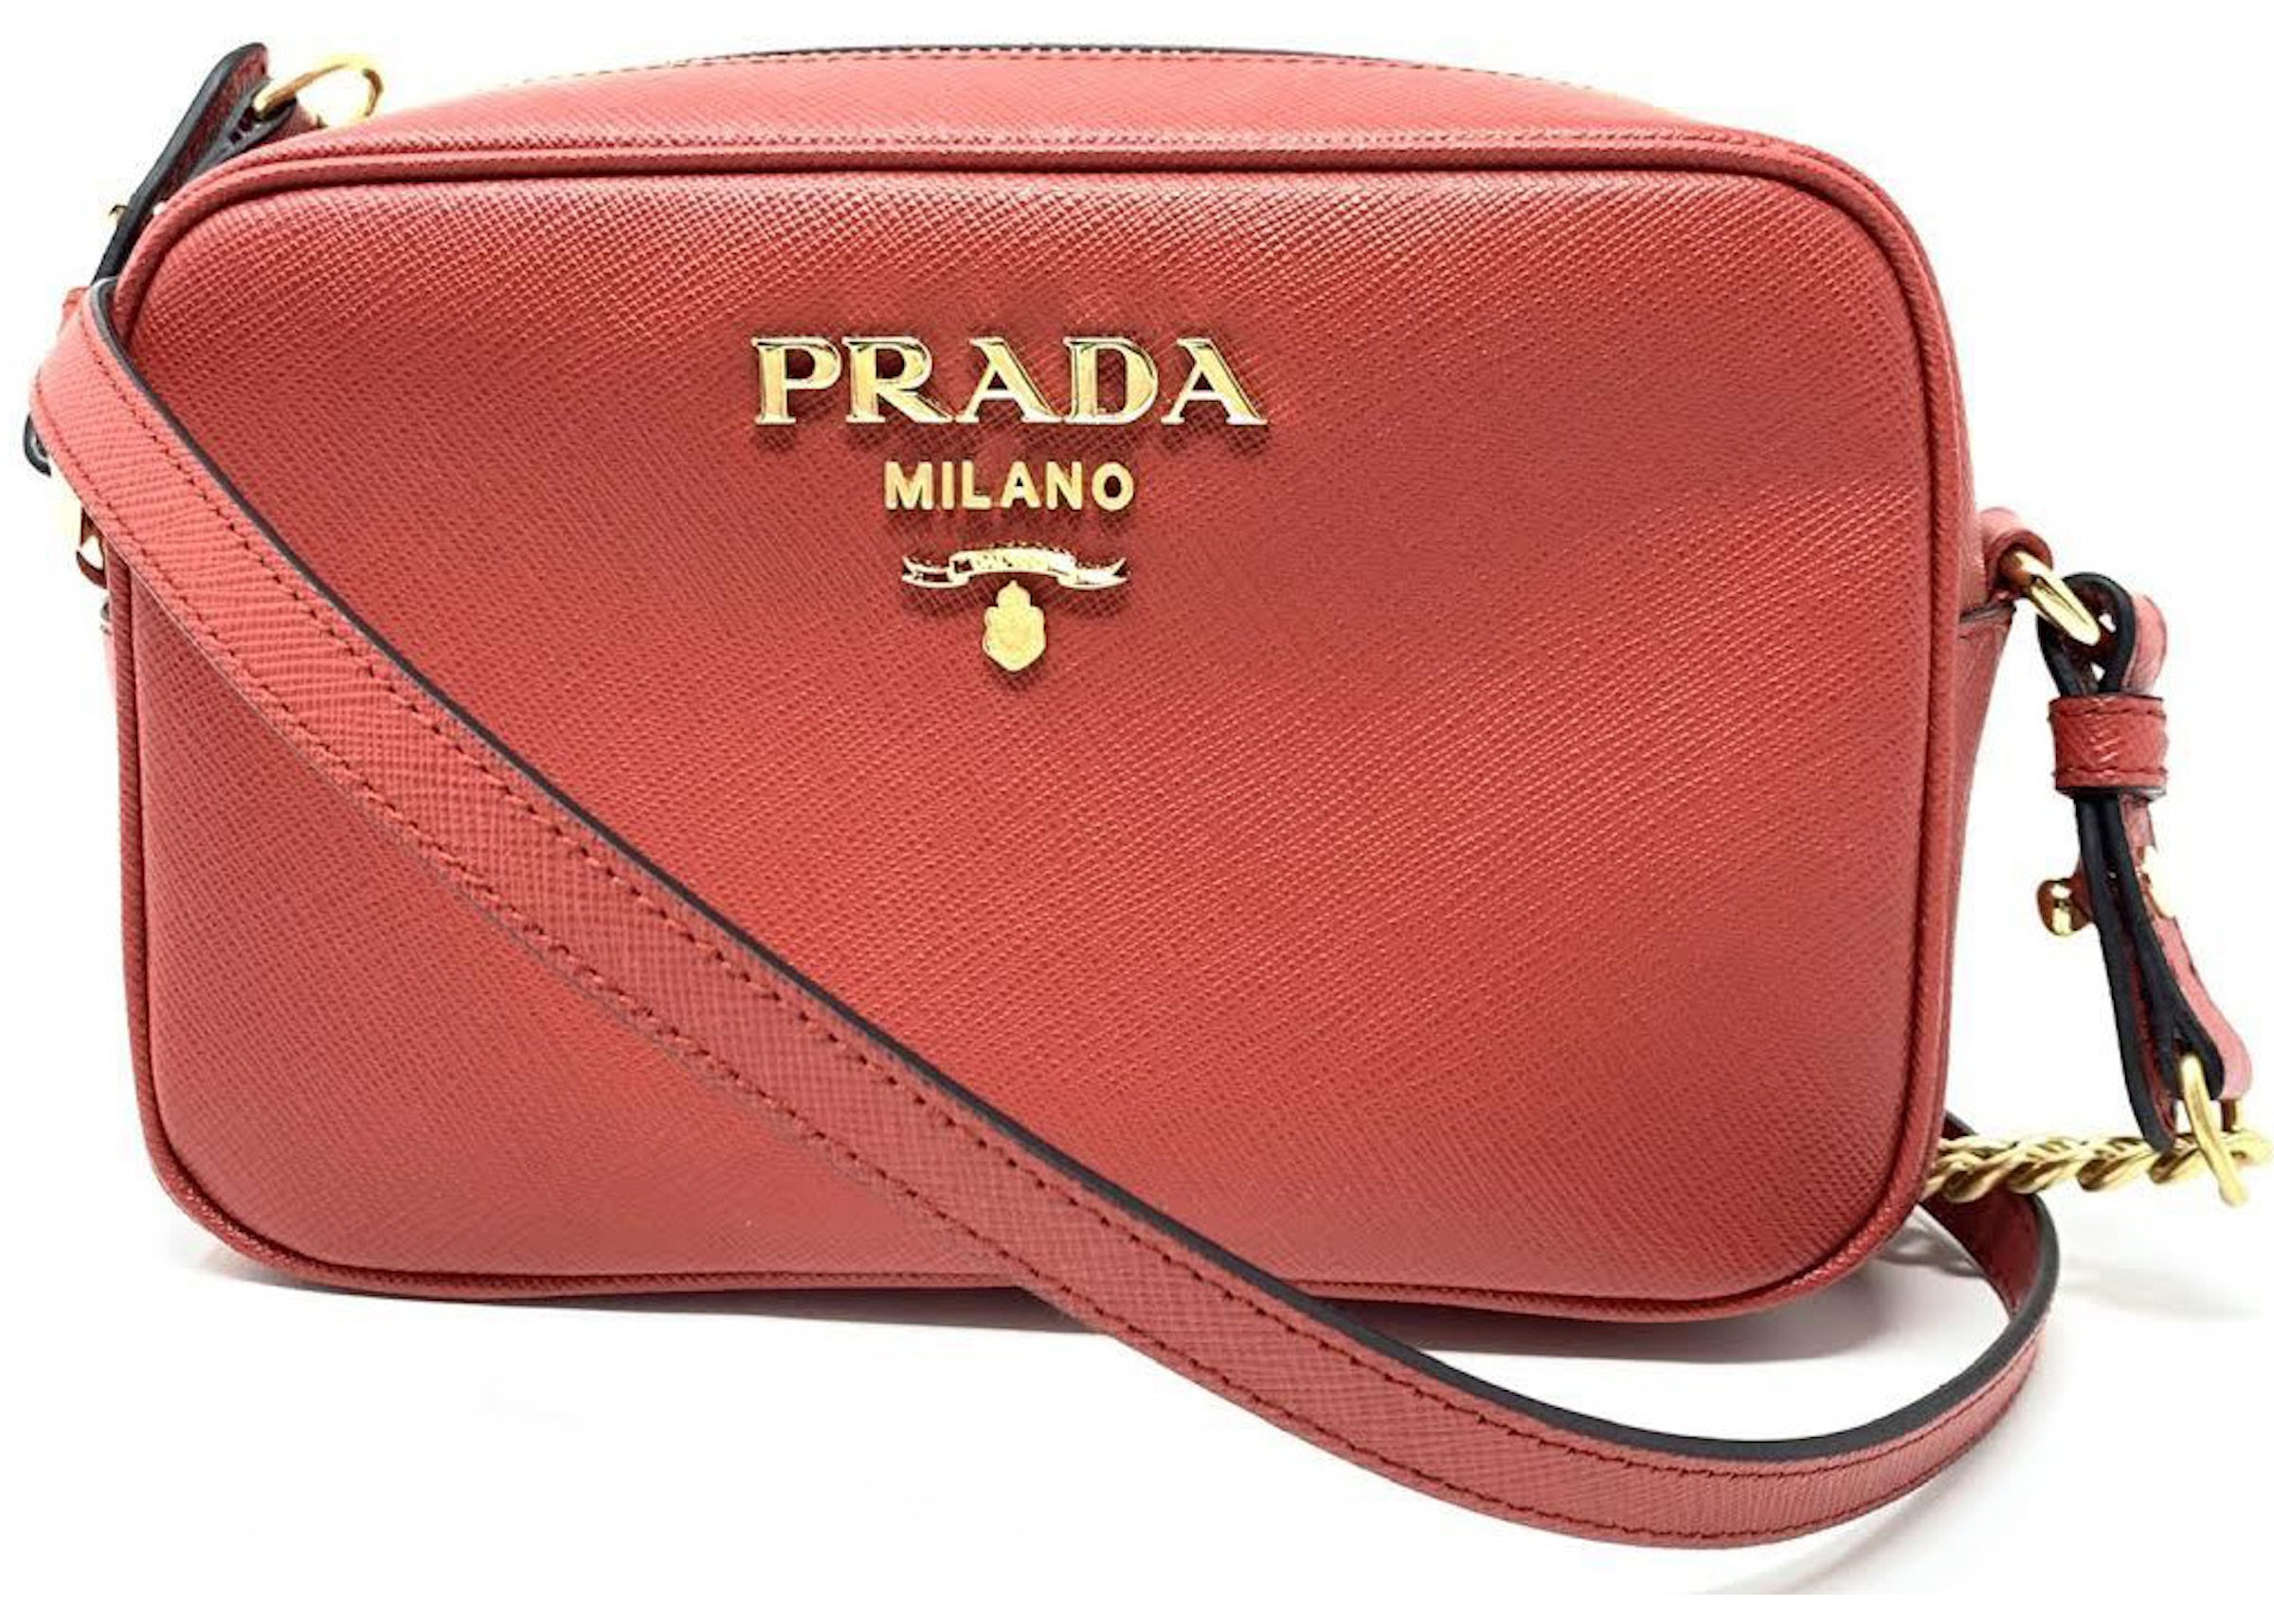 Prada Saffiano Camera Crossbody Red in Saffiano Leather with Gold